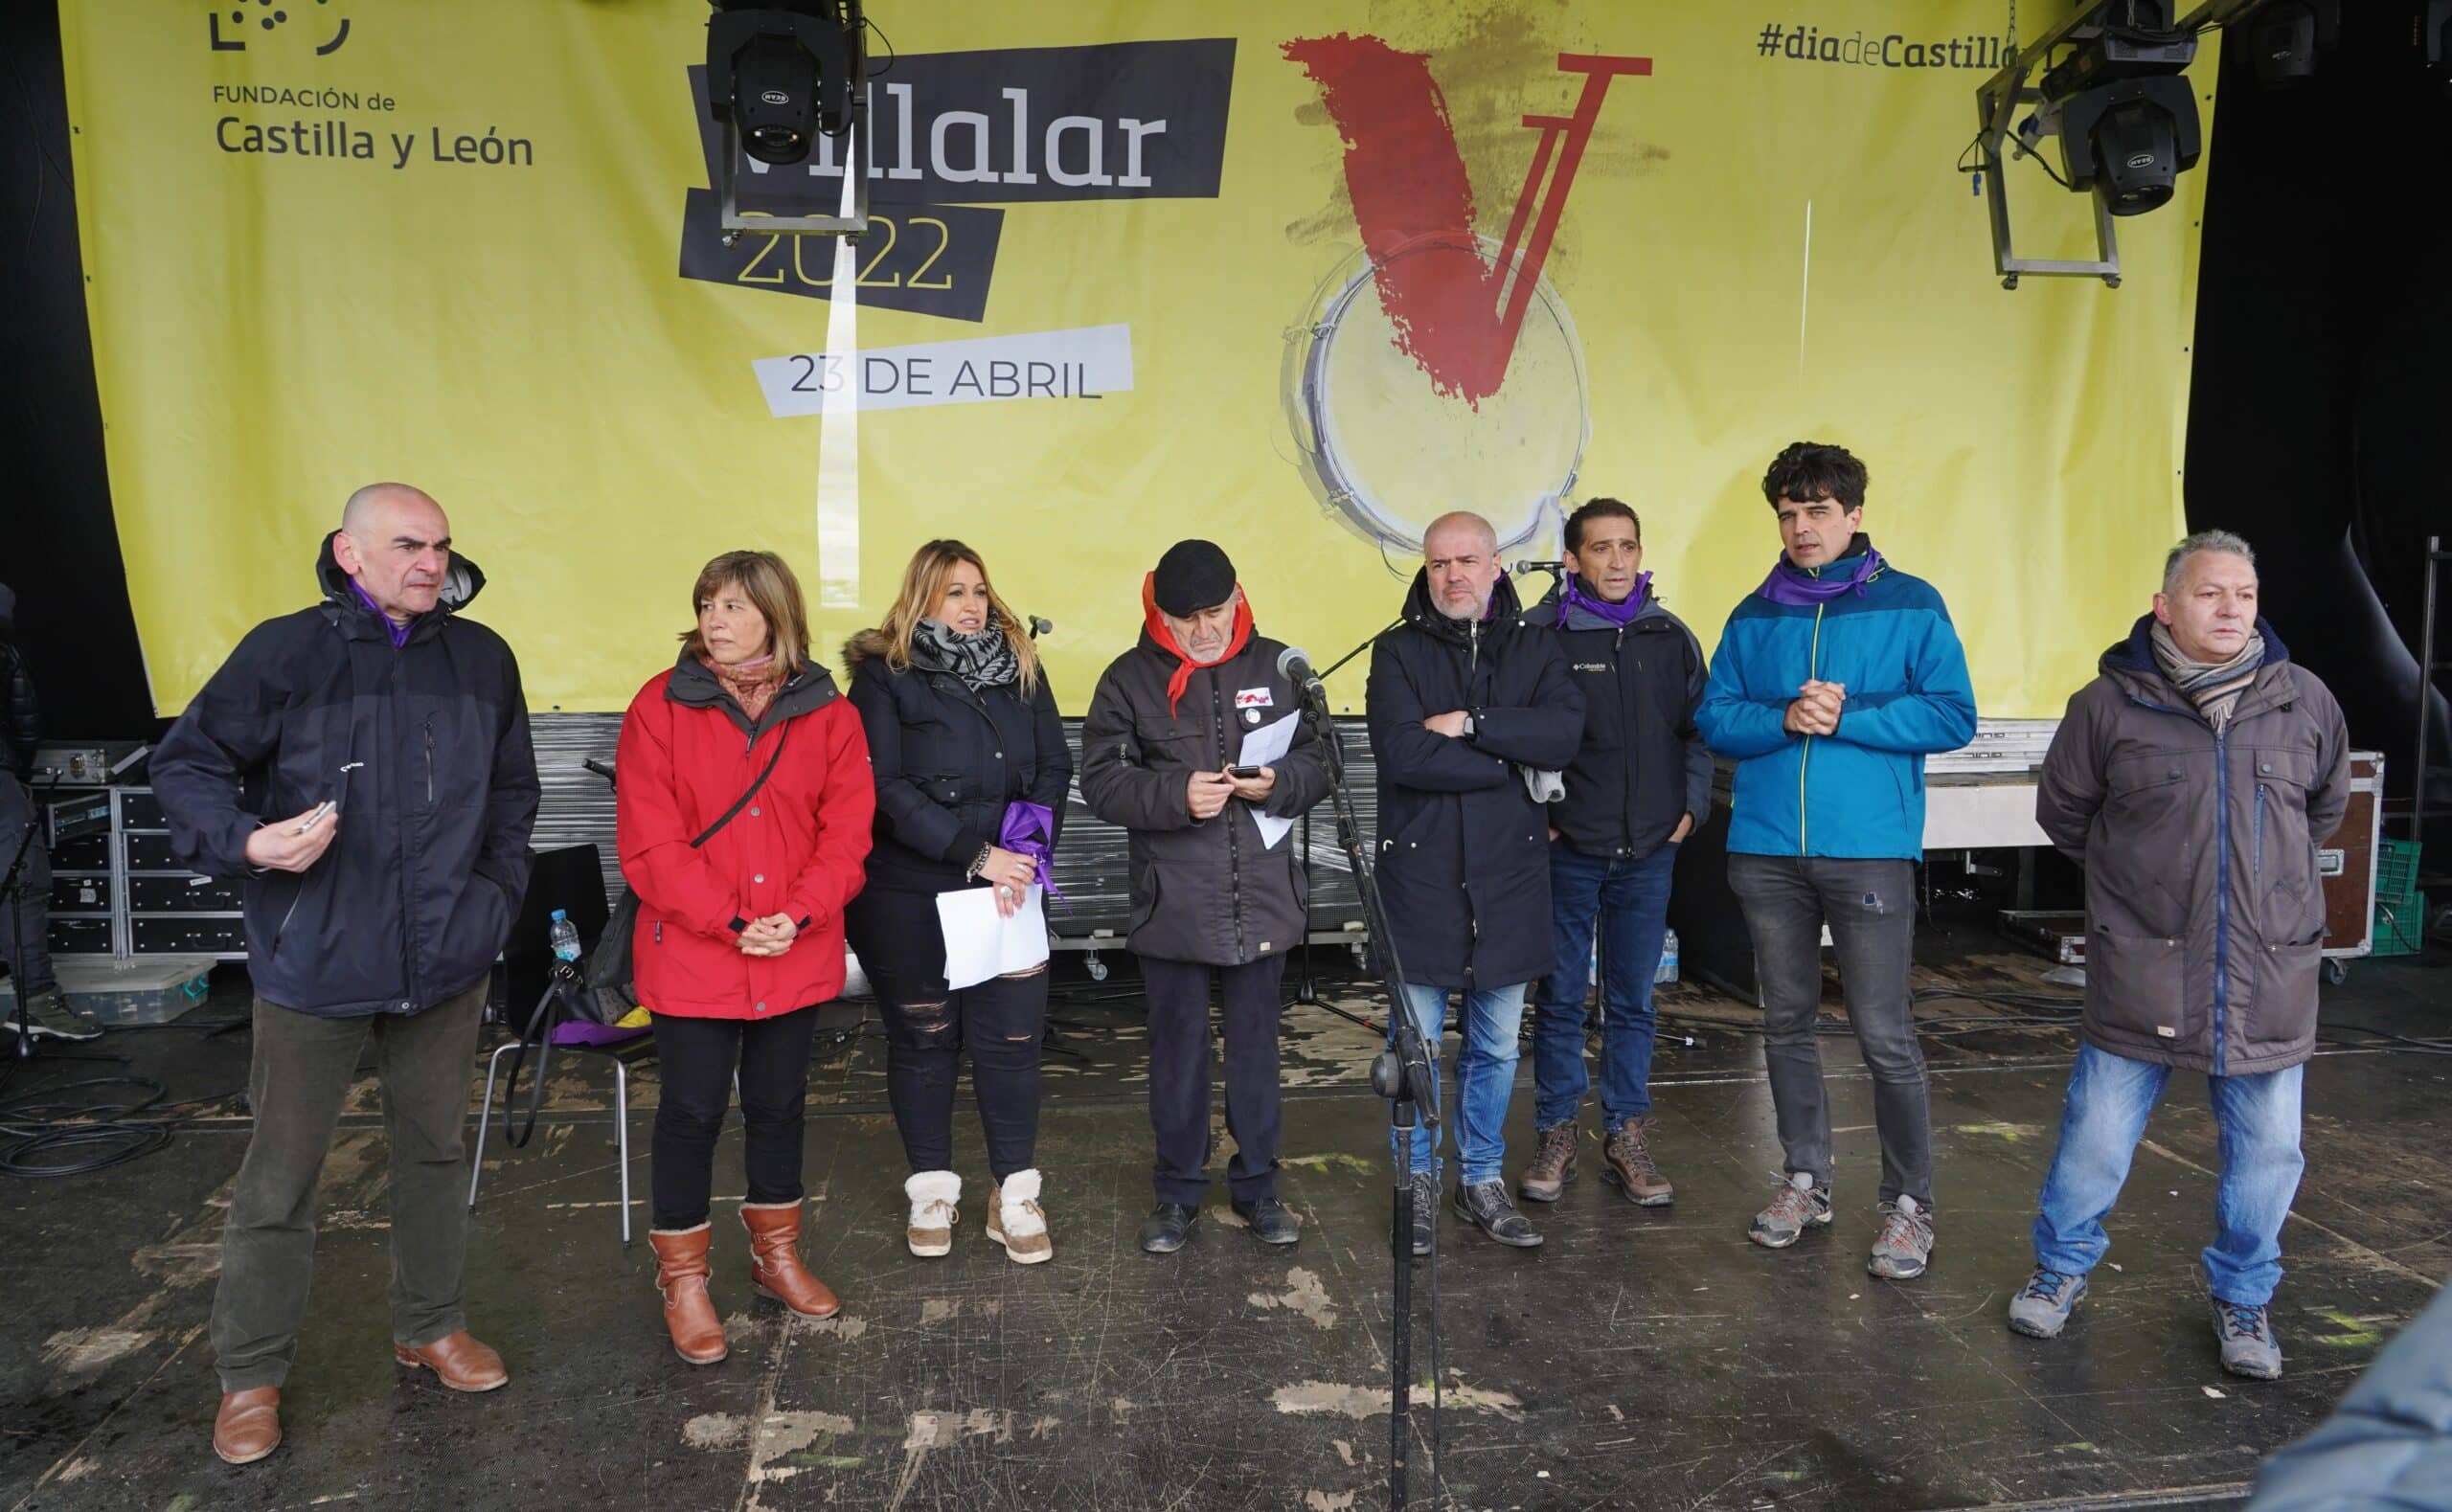 El manifiesto de Villalar pide «democracia plena» y habla de «ataques de la extrema derecha»